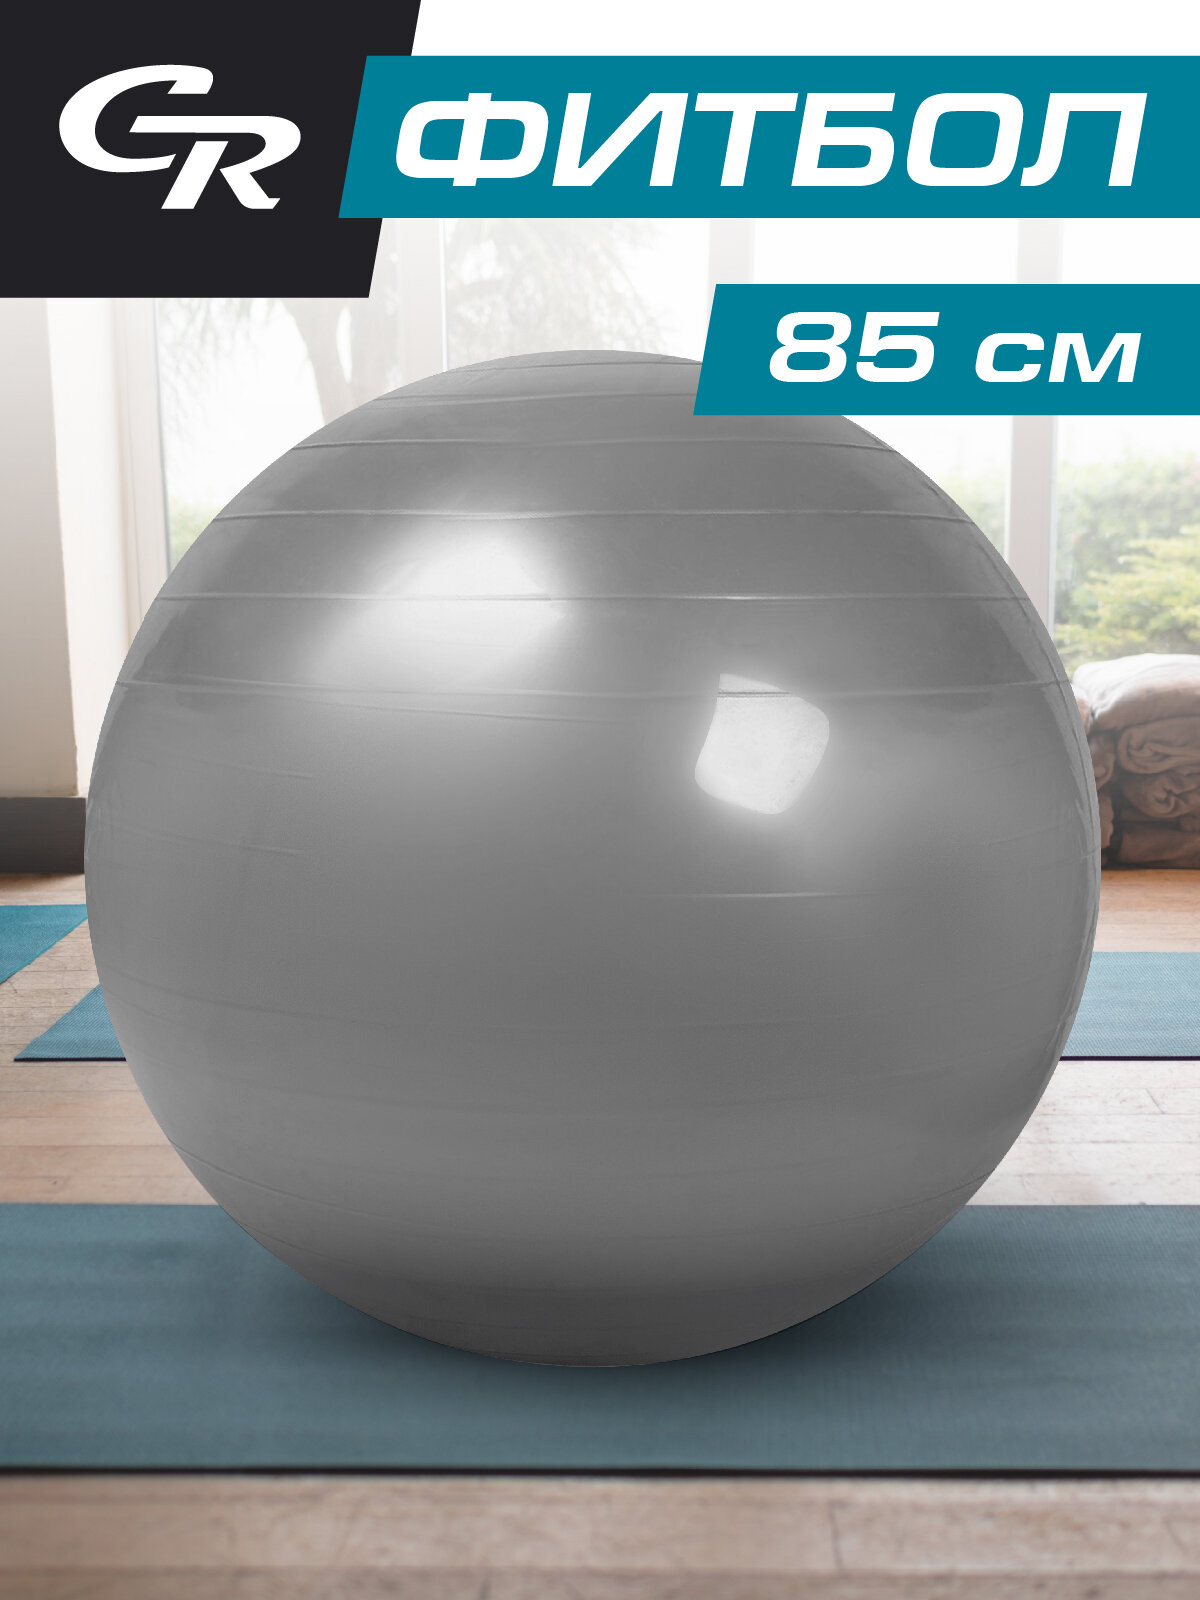 Мяч гимнастический, фитбол, для фитнеса, для занятий спортом, диаметр 85 см, ПВХ, серебристый